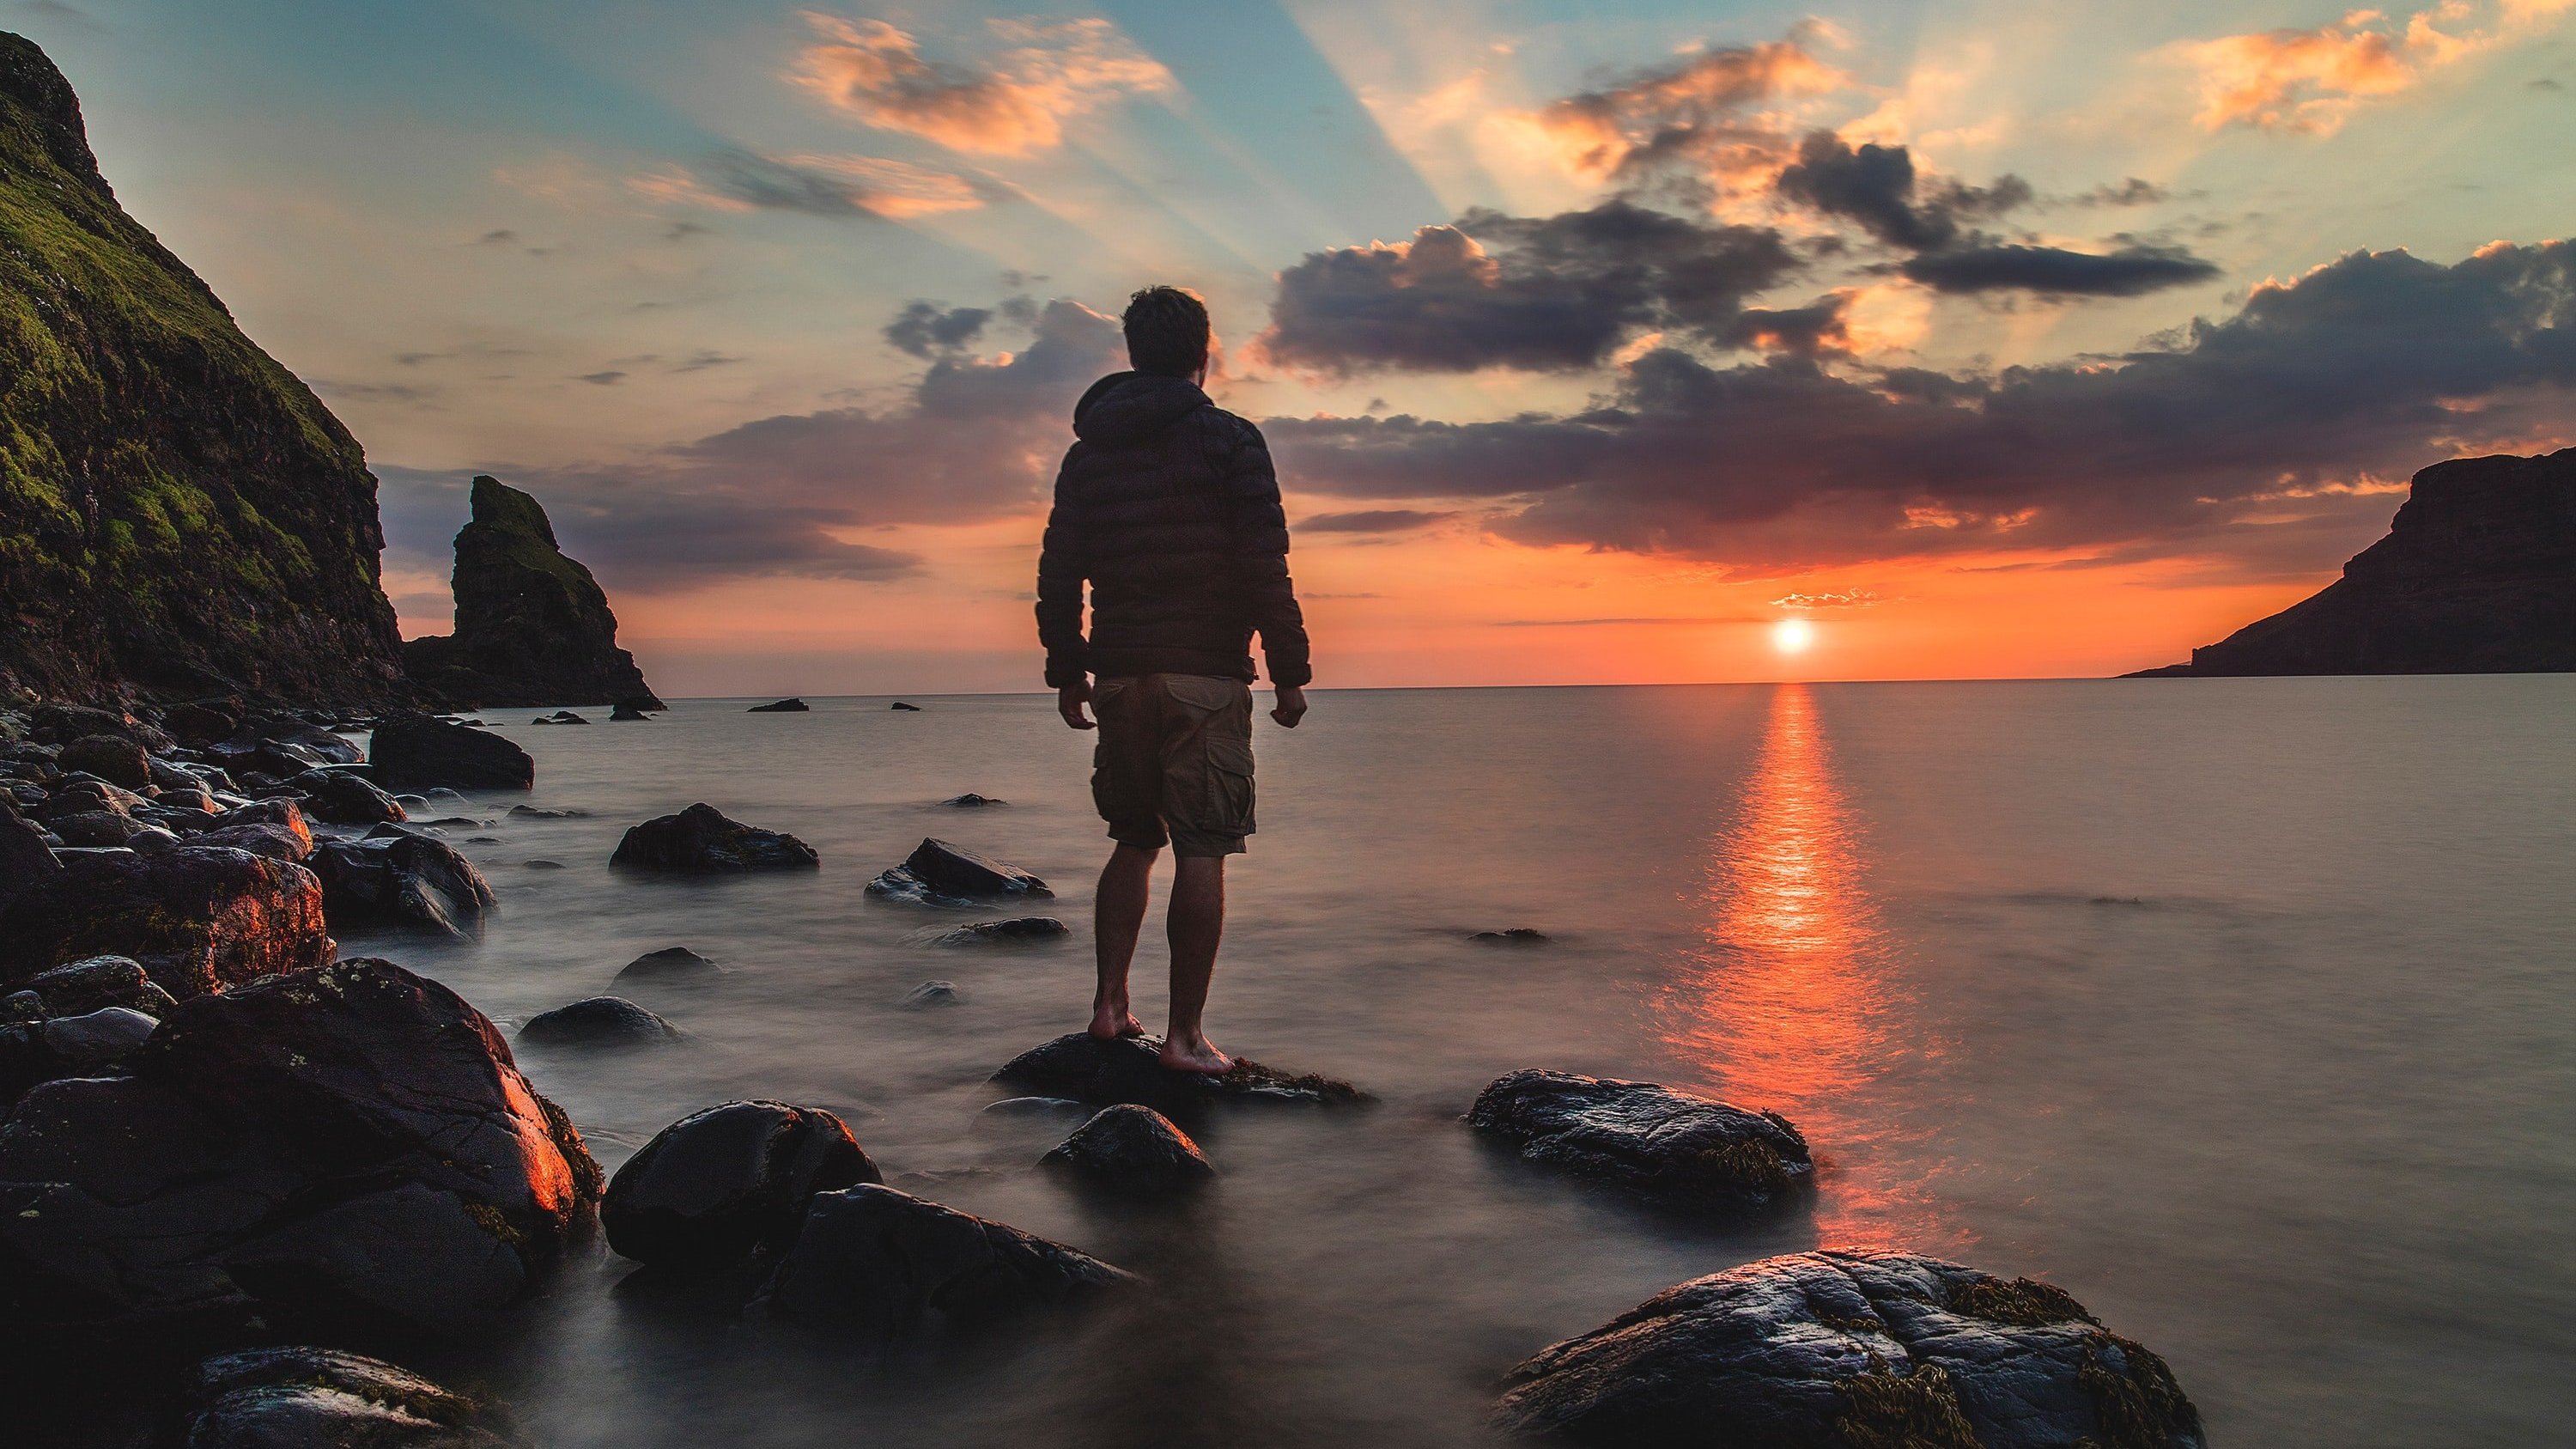 Homem em pé sobre uma rocha na praia, olhando para o mar, sob o pôr do sol.